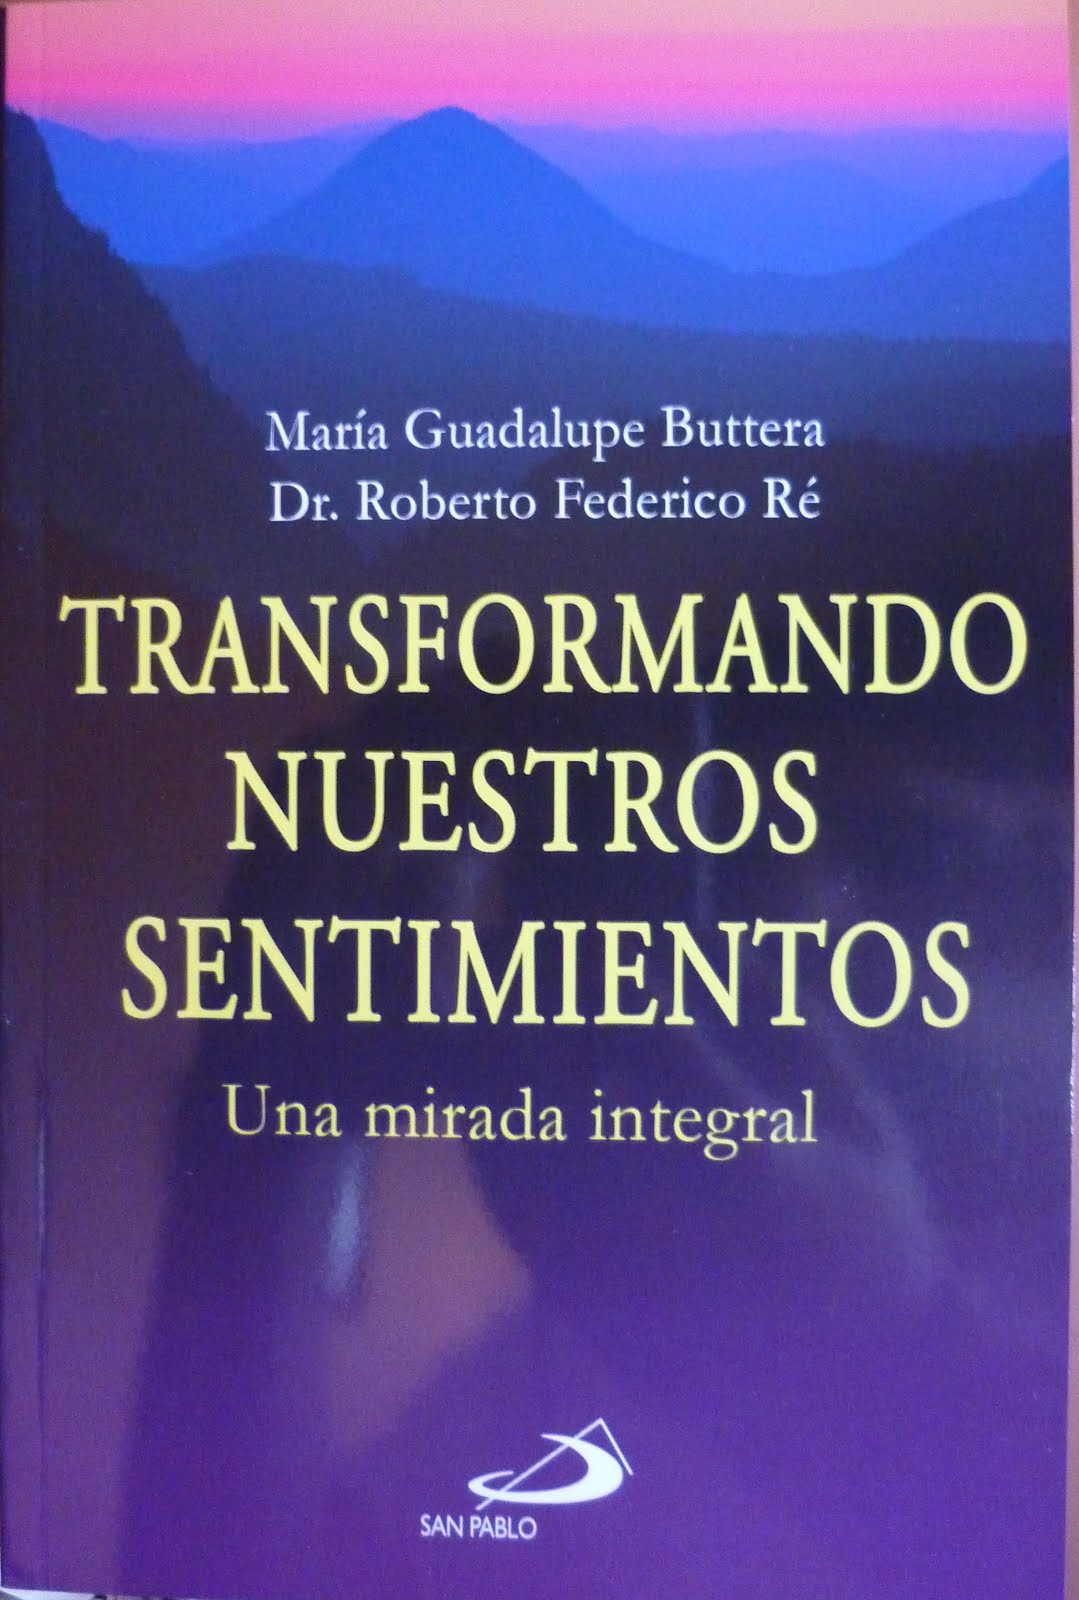 Libro "Transformando Nuestros Sentimientos"